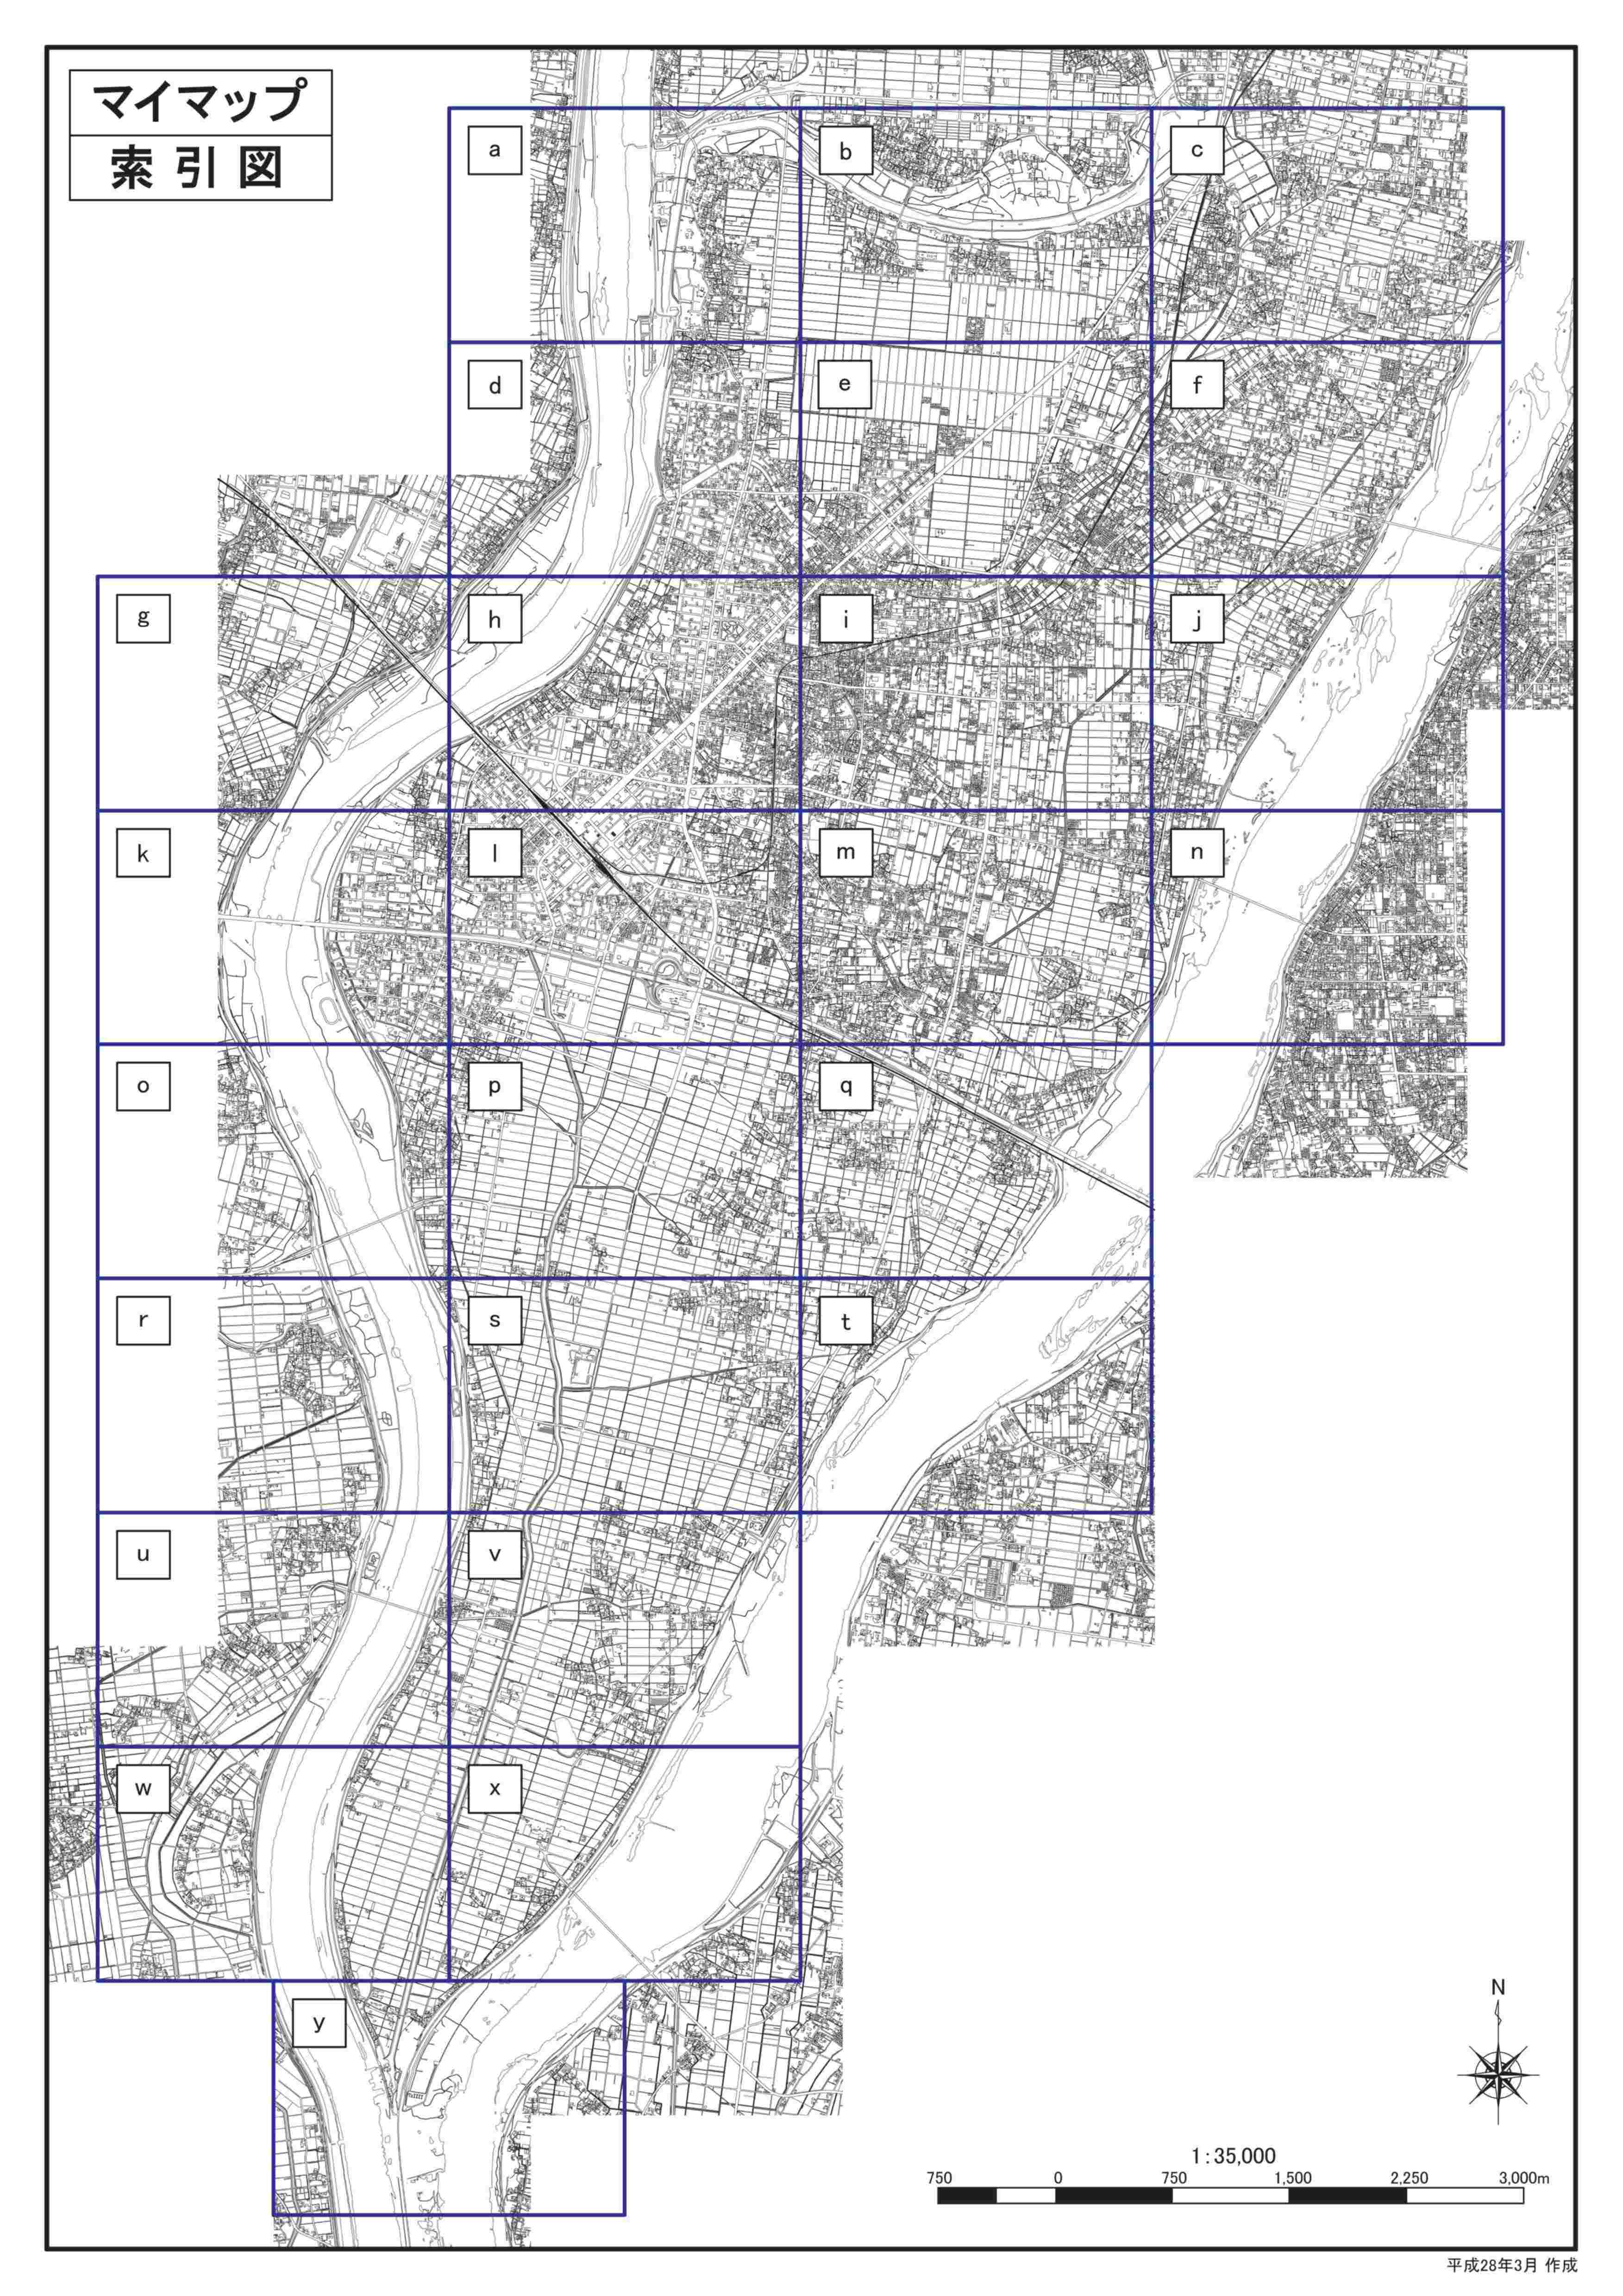 桑原川洪水ハザードマップ計画規模版（詳細図）の画像